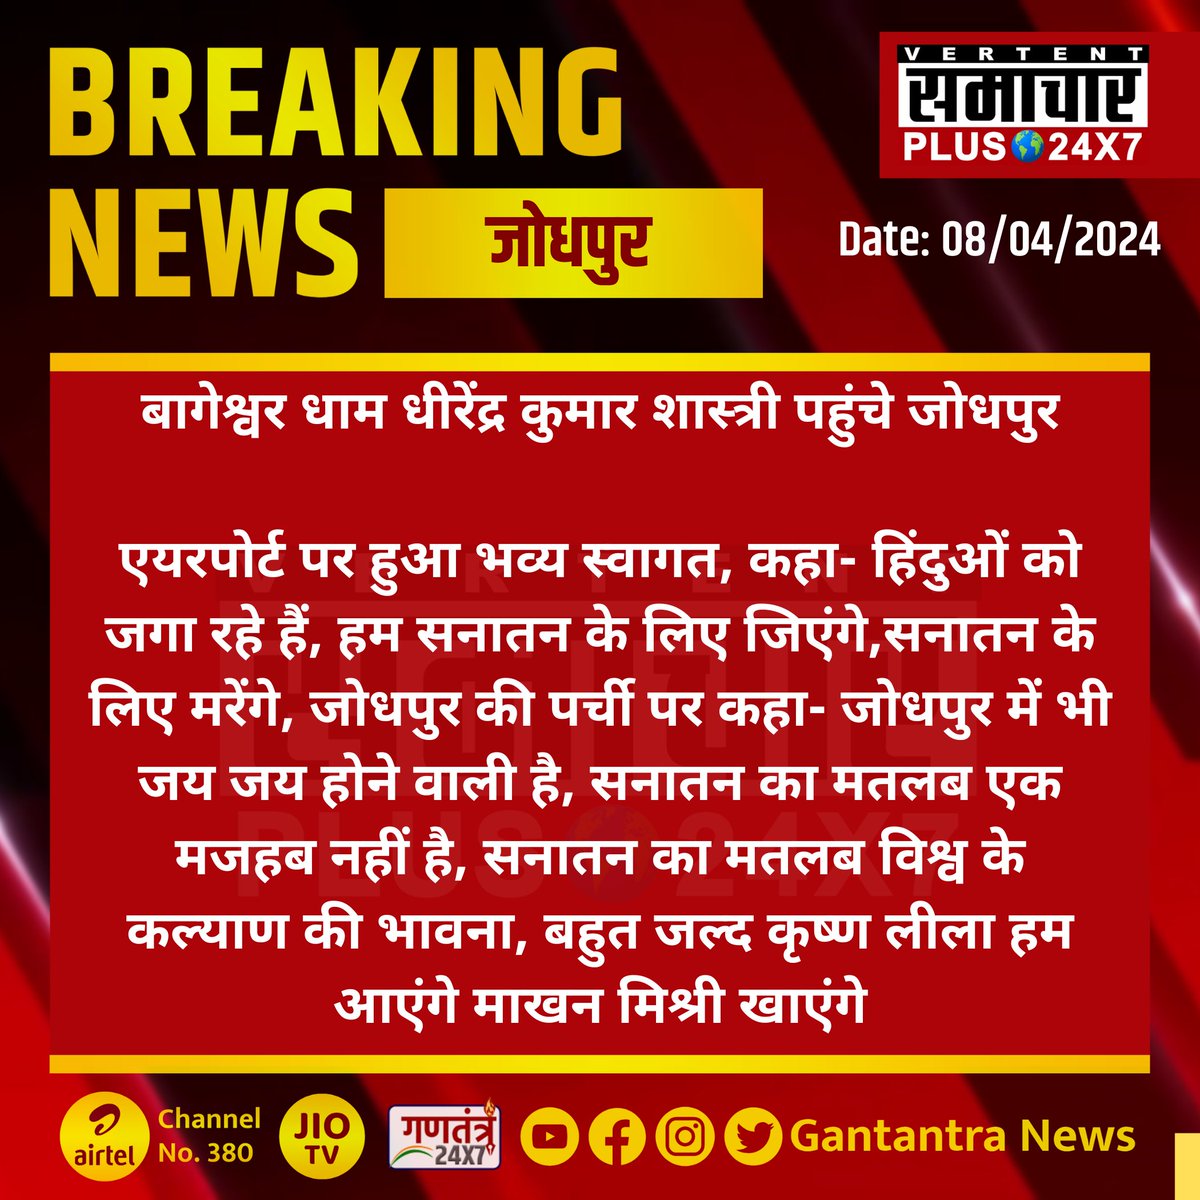 #जोधपुर : बागेश्वर धाम धीरेंद्र कुमार शास्त्री पहुंचे जोधपुर 

एयरपोर्ट पर हुआ भव्य स्वागत, कहा- हिंदुओं को जगा रहे हैं...

#Jodhpur #RajasthanNews #GantantraNews #DhirendraKrishnaShastri